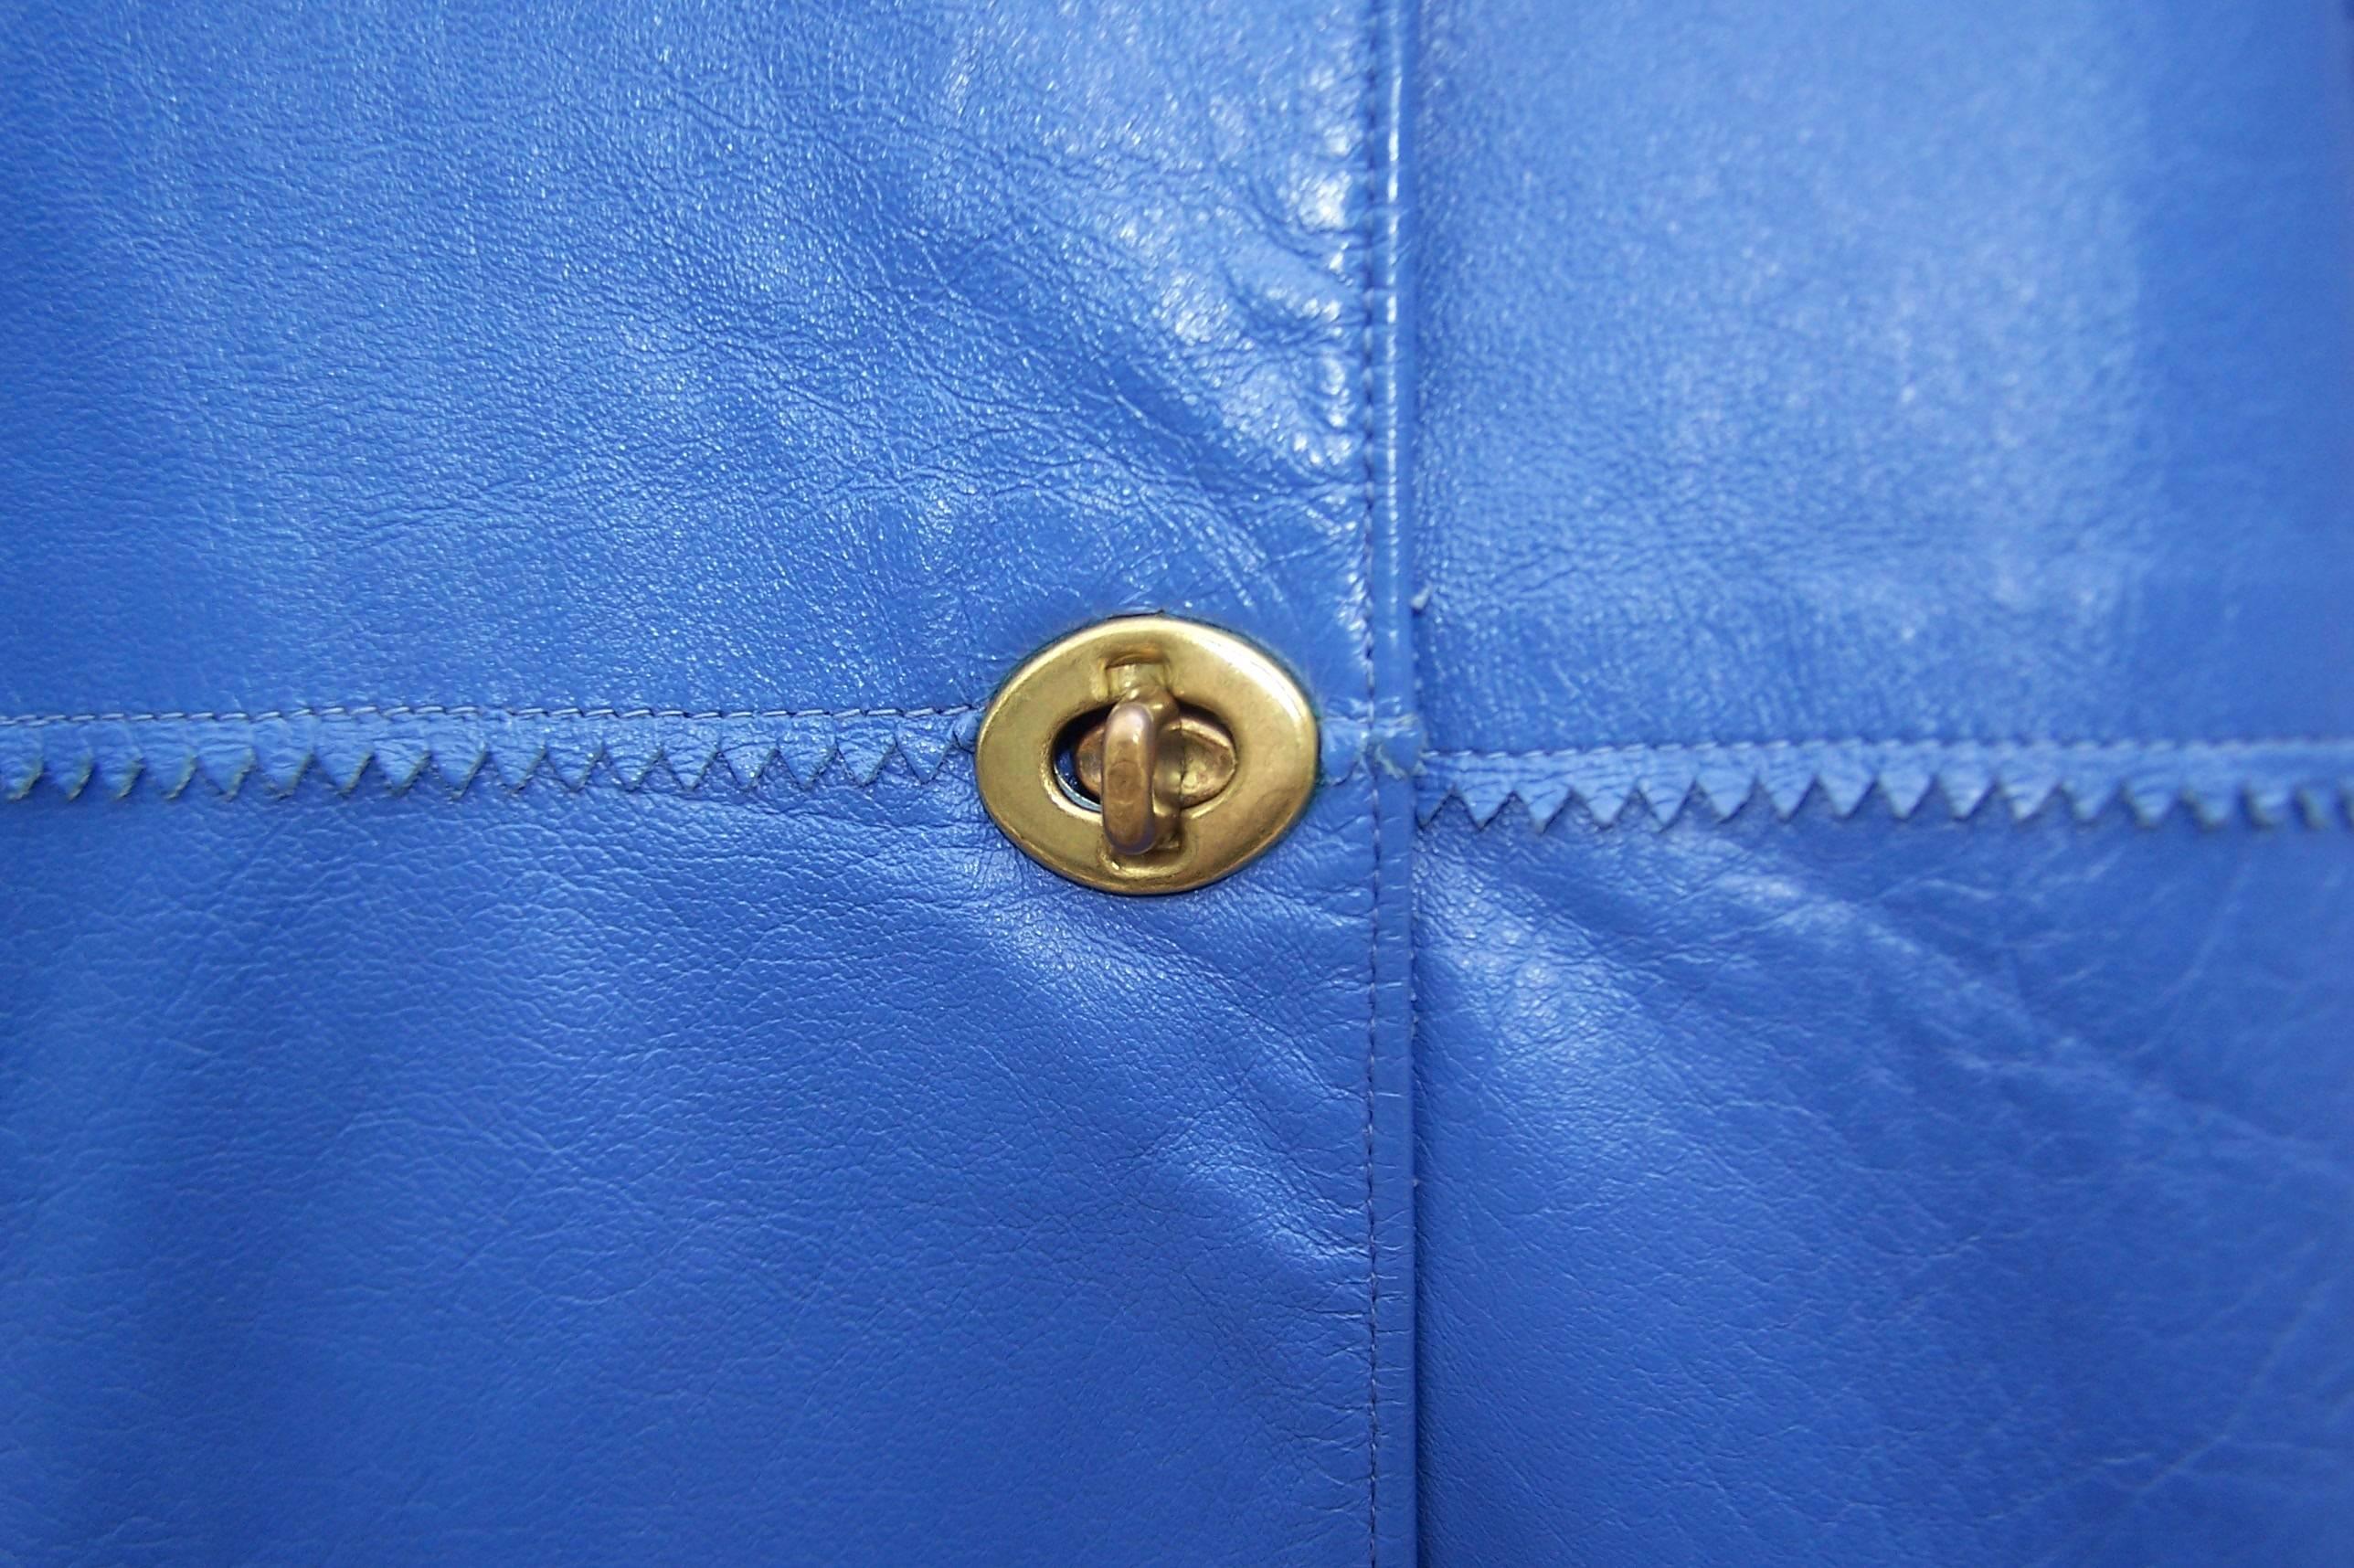 c.1970 Bonnie Cashin Mandarin Style Leather Jacket 2